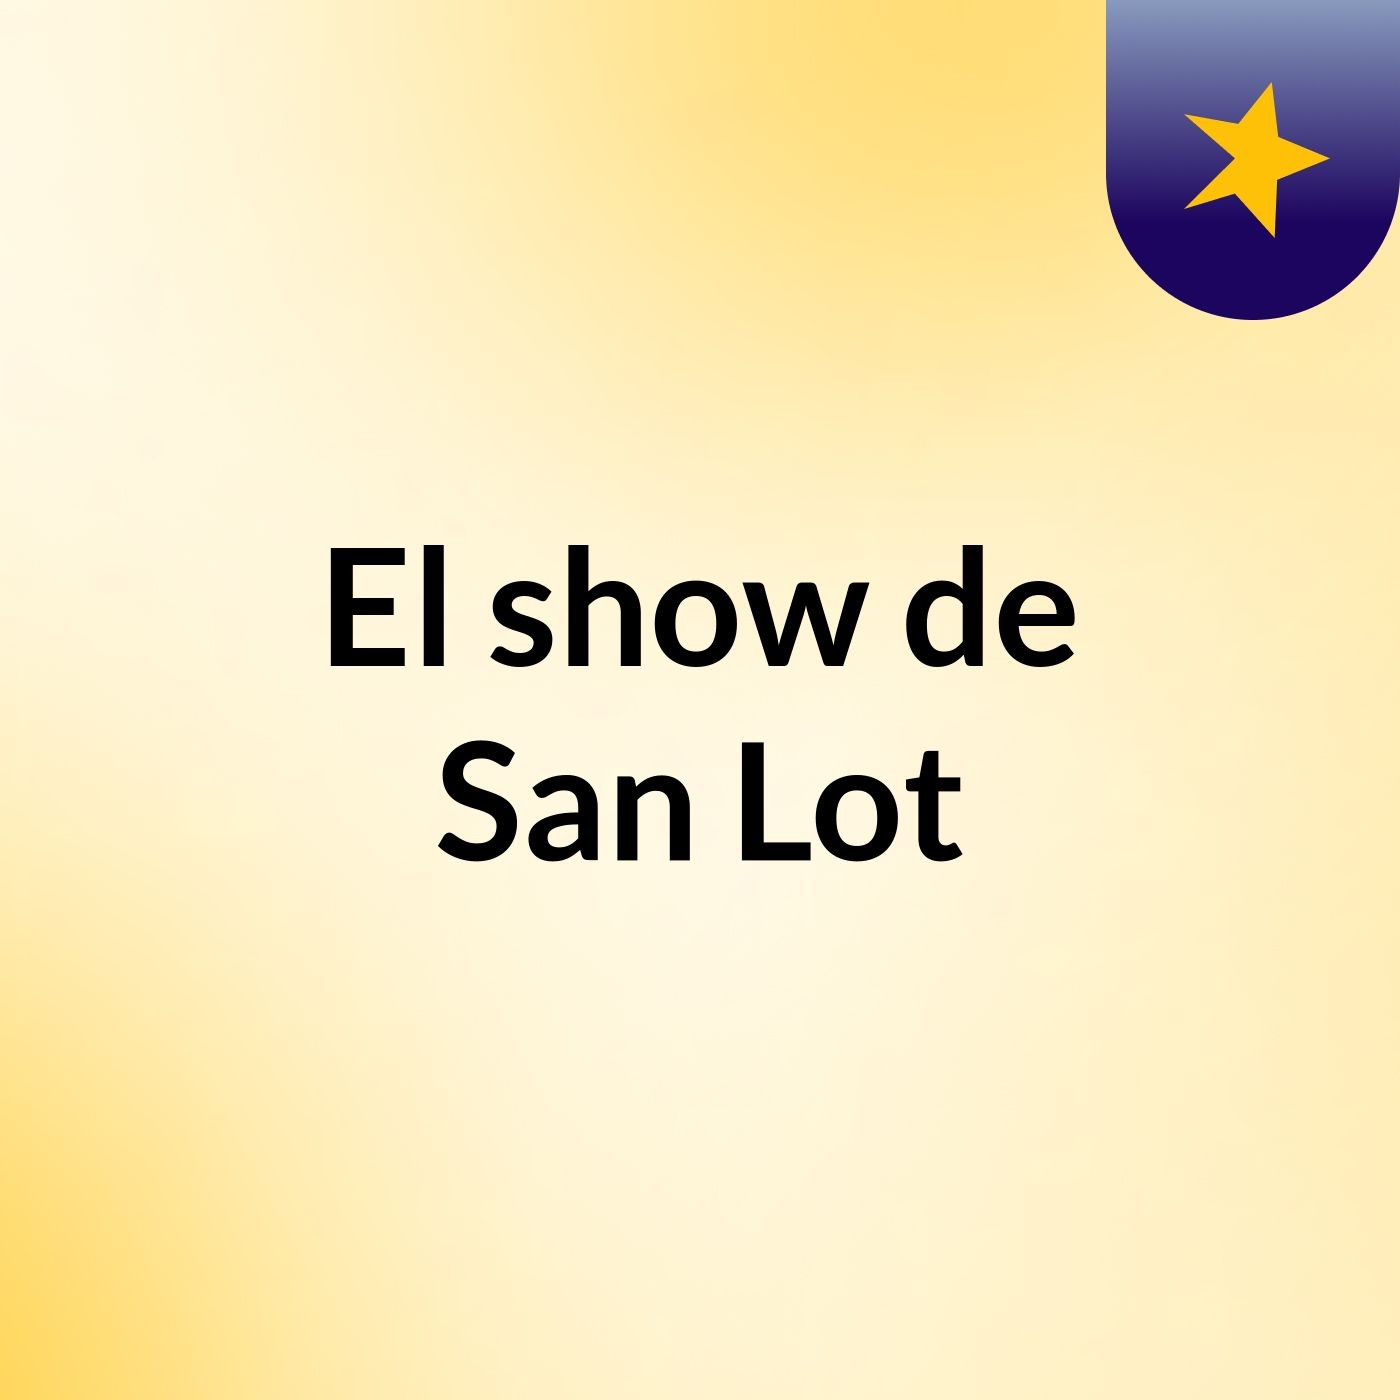 El show de San Lot